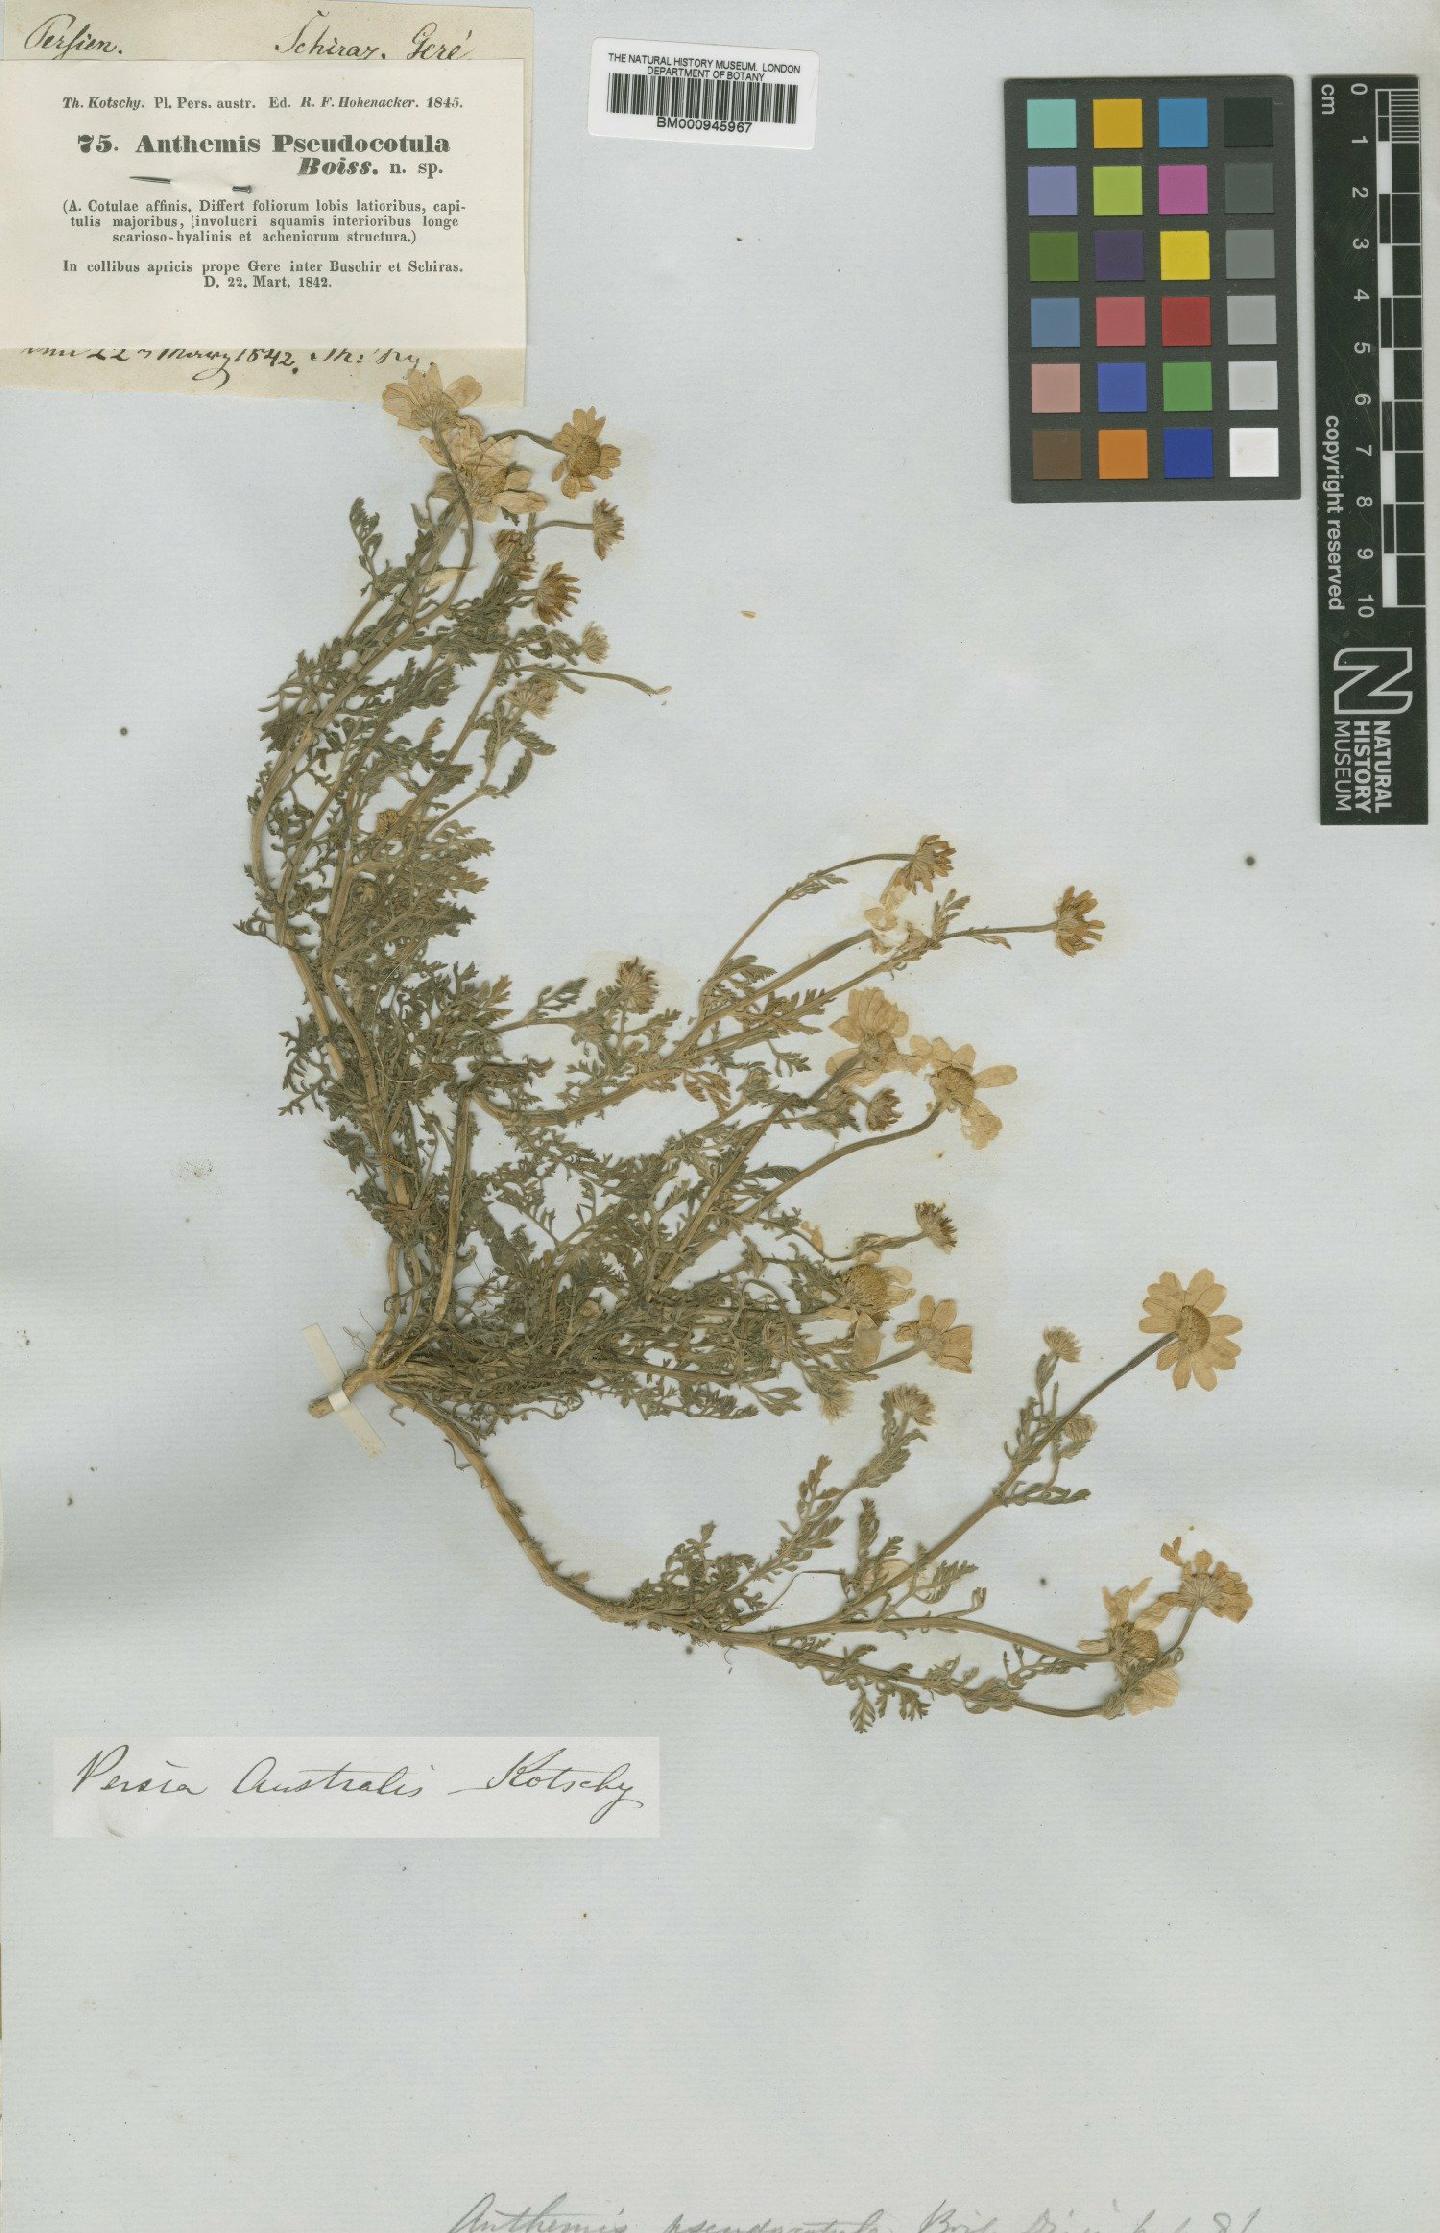 To NHMUK collection (Anthemis pseudocotula Boiss.; Type; NHMUK:ecatalogue:474113)